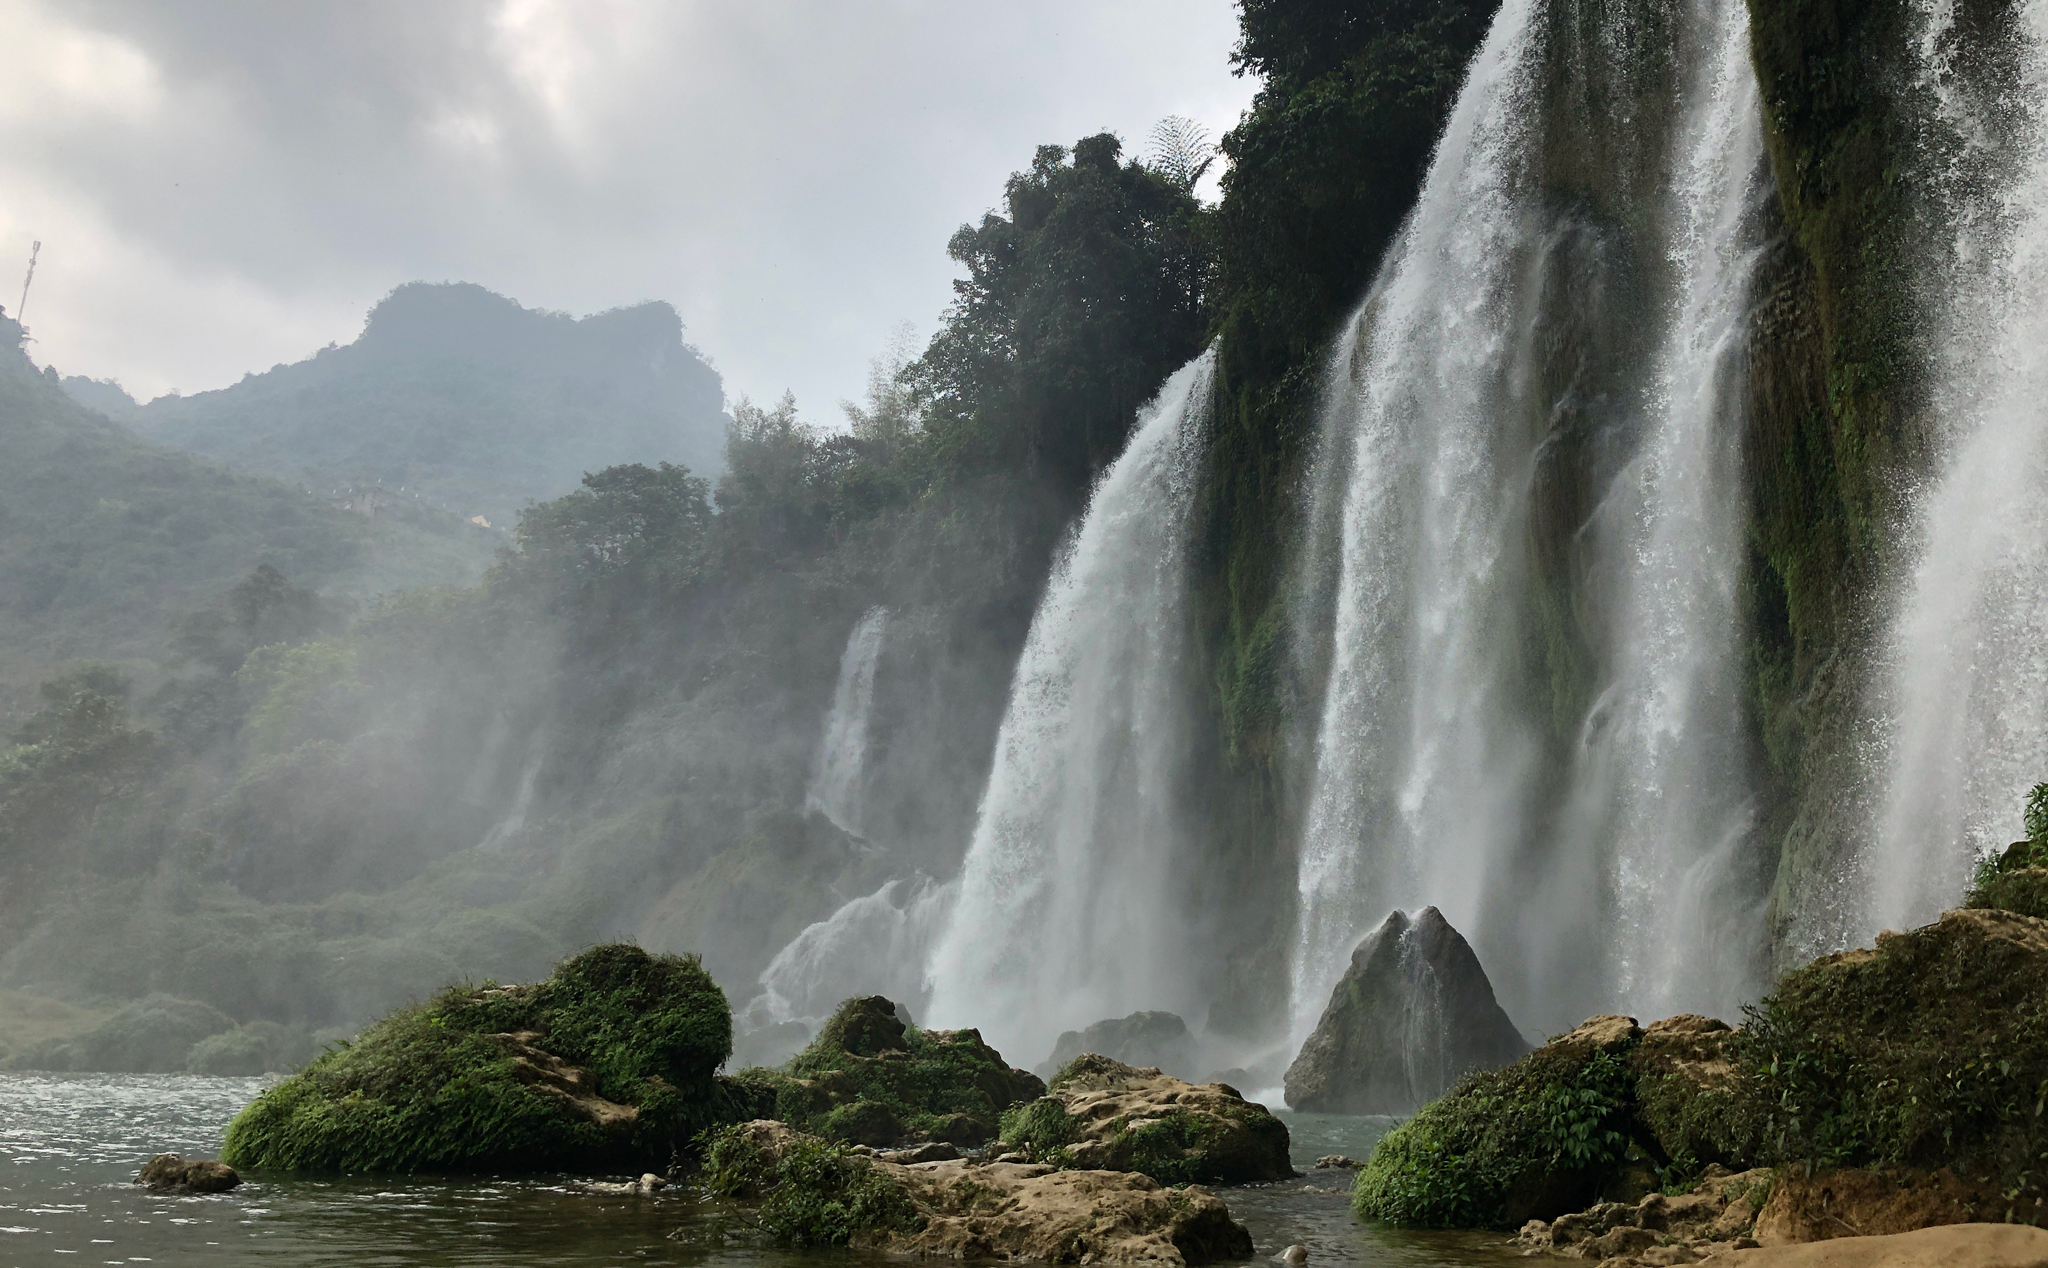 Anh em có biết thác Bản Giốc của Việt Nam cũng thuộc top những thác nước đẹp nhất thế giới không?